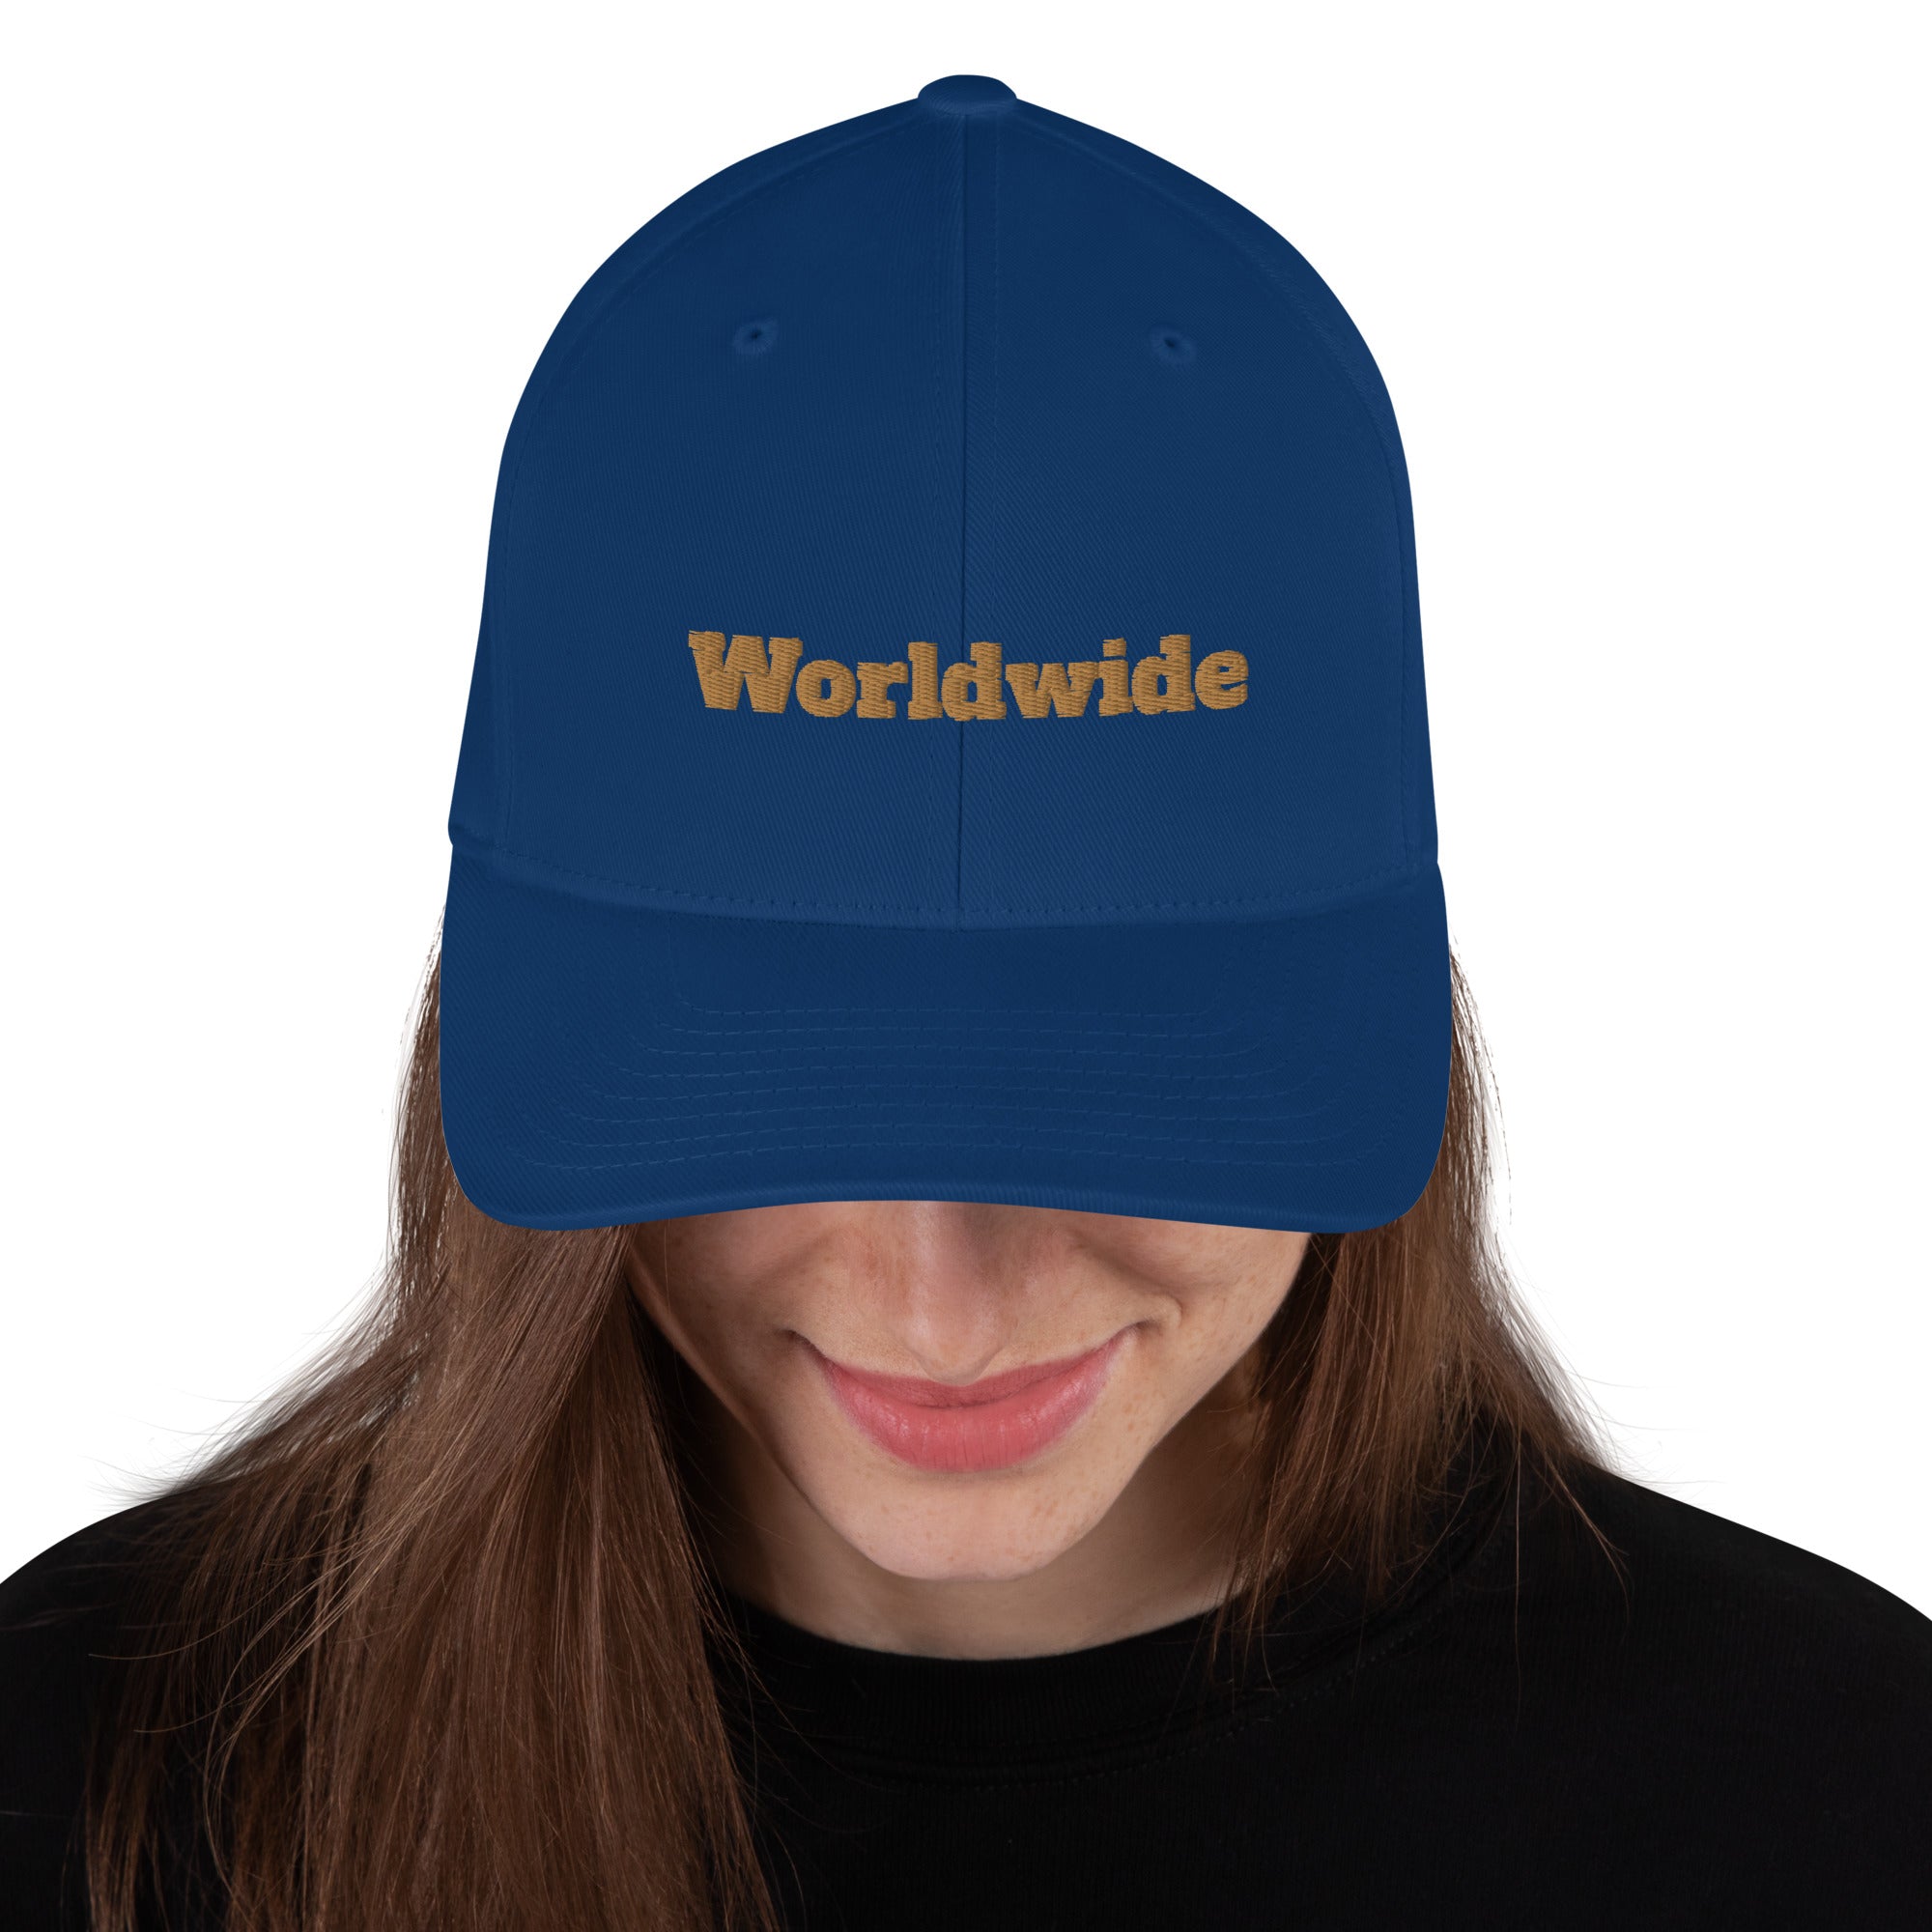 Worldwide Structured Twill Cap